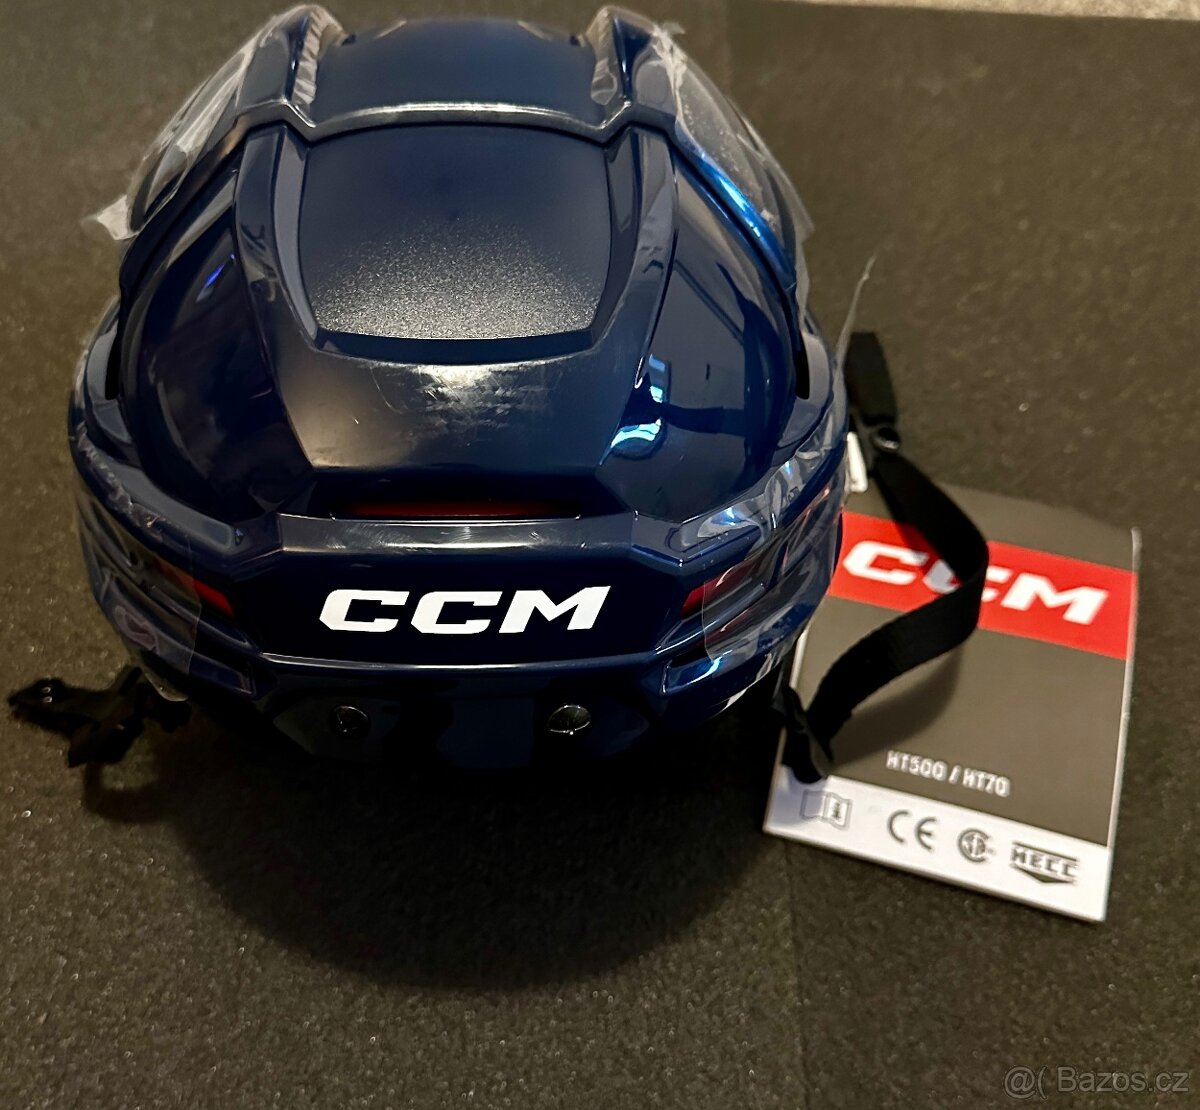 Hokejová přilba CCM Tacks 70 SR, velikost M, modrá navy